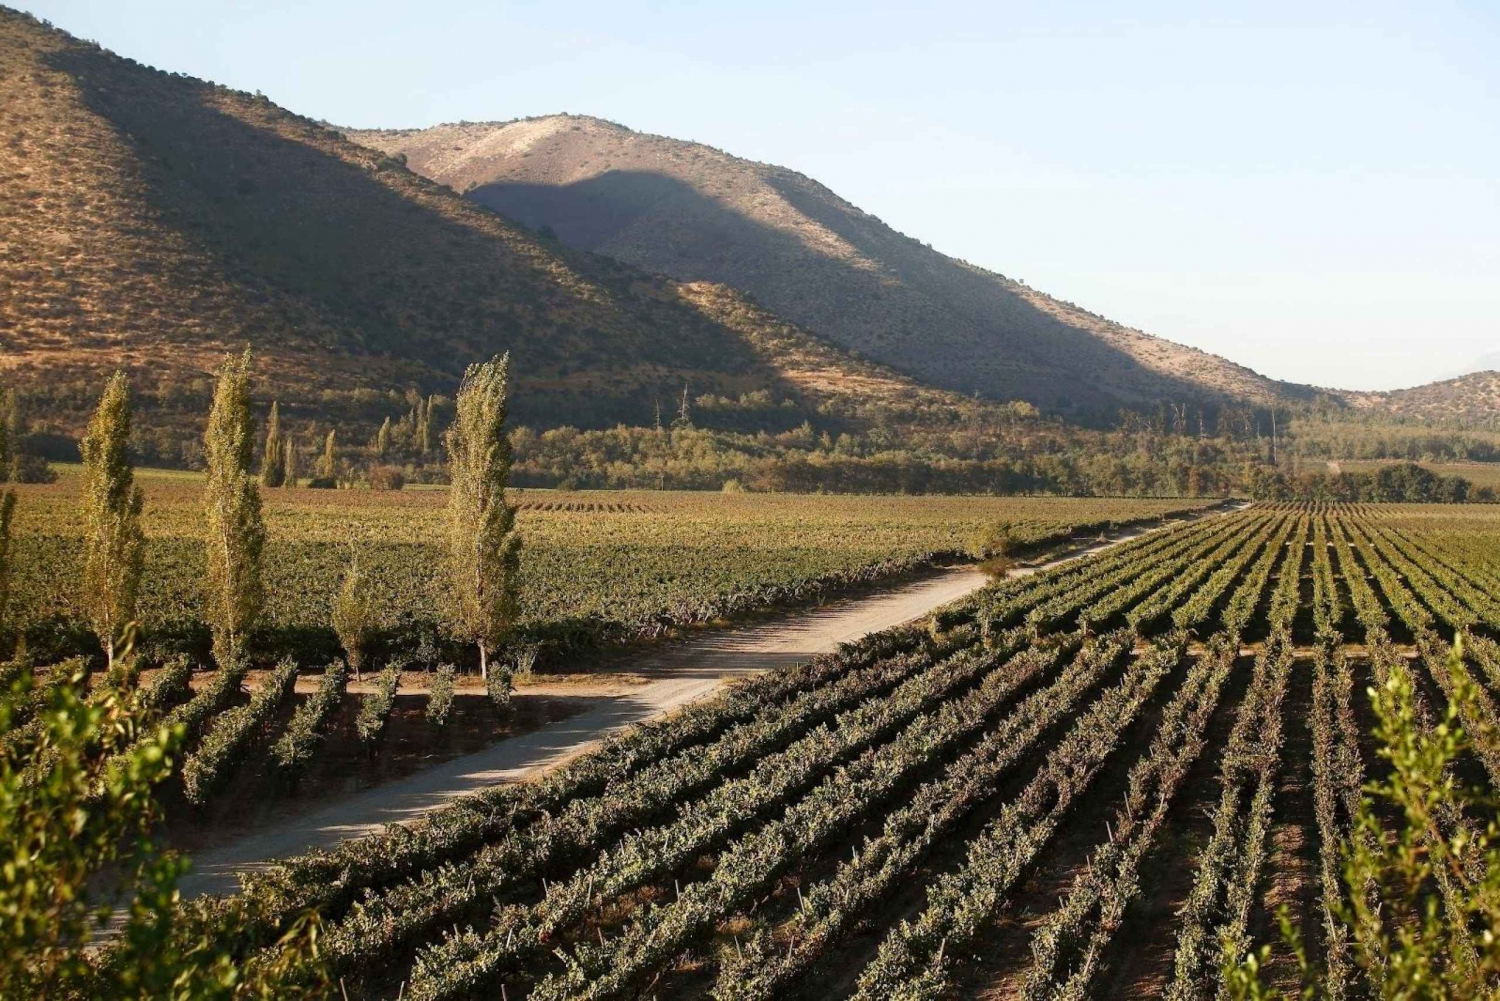 Santiago: Halvdagsutflykt till Santa Rita vingård